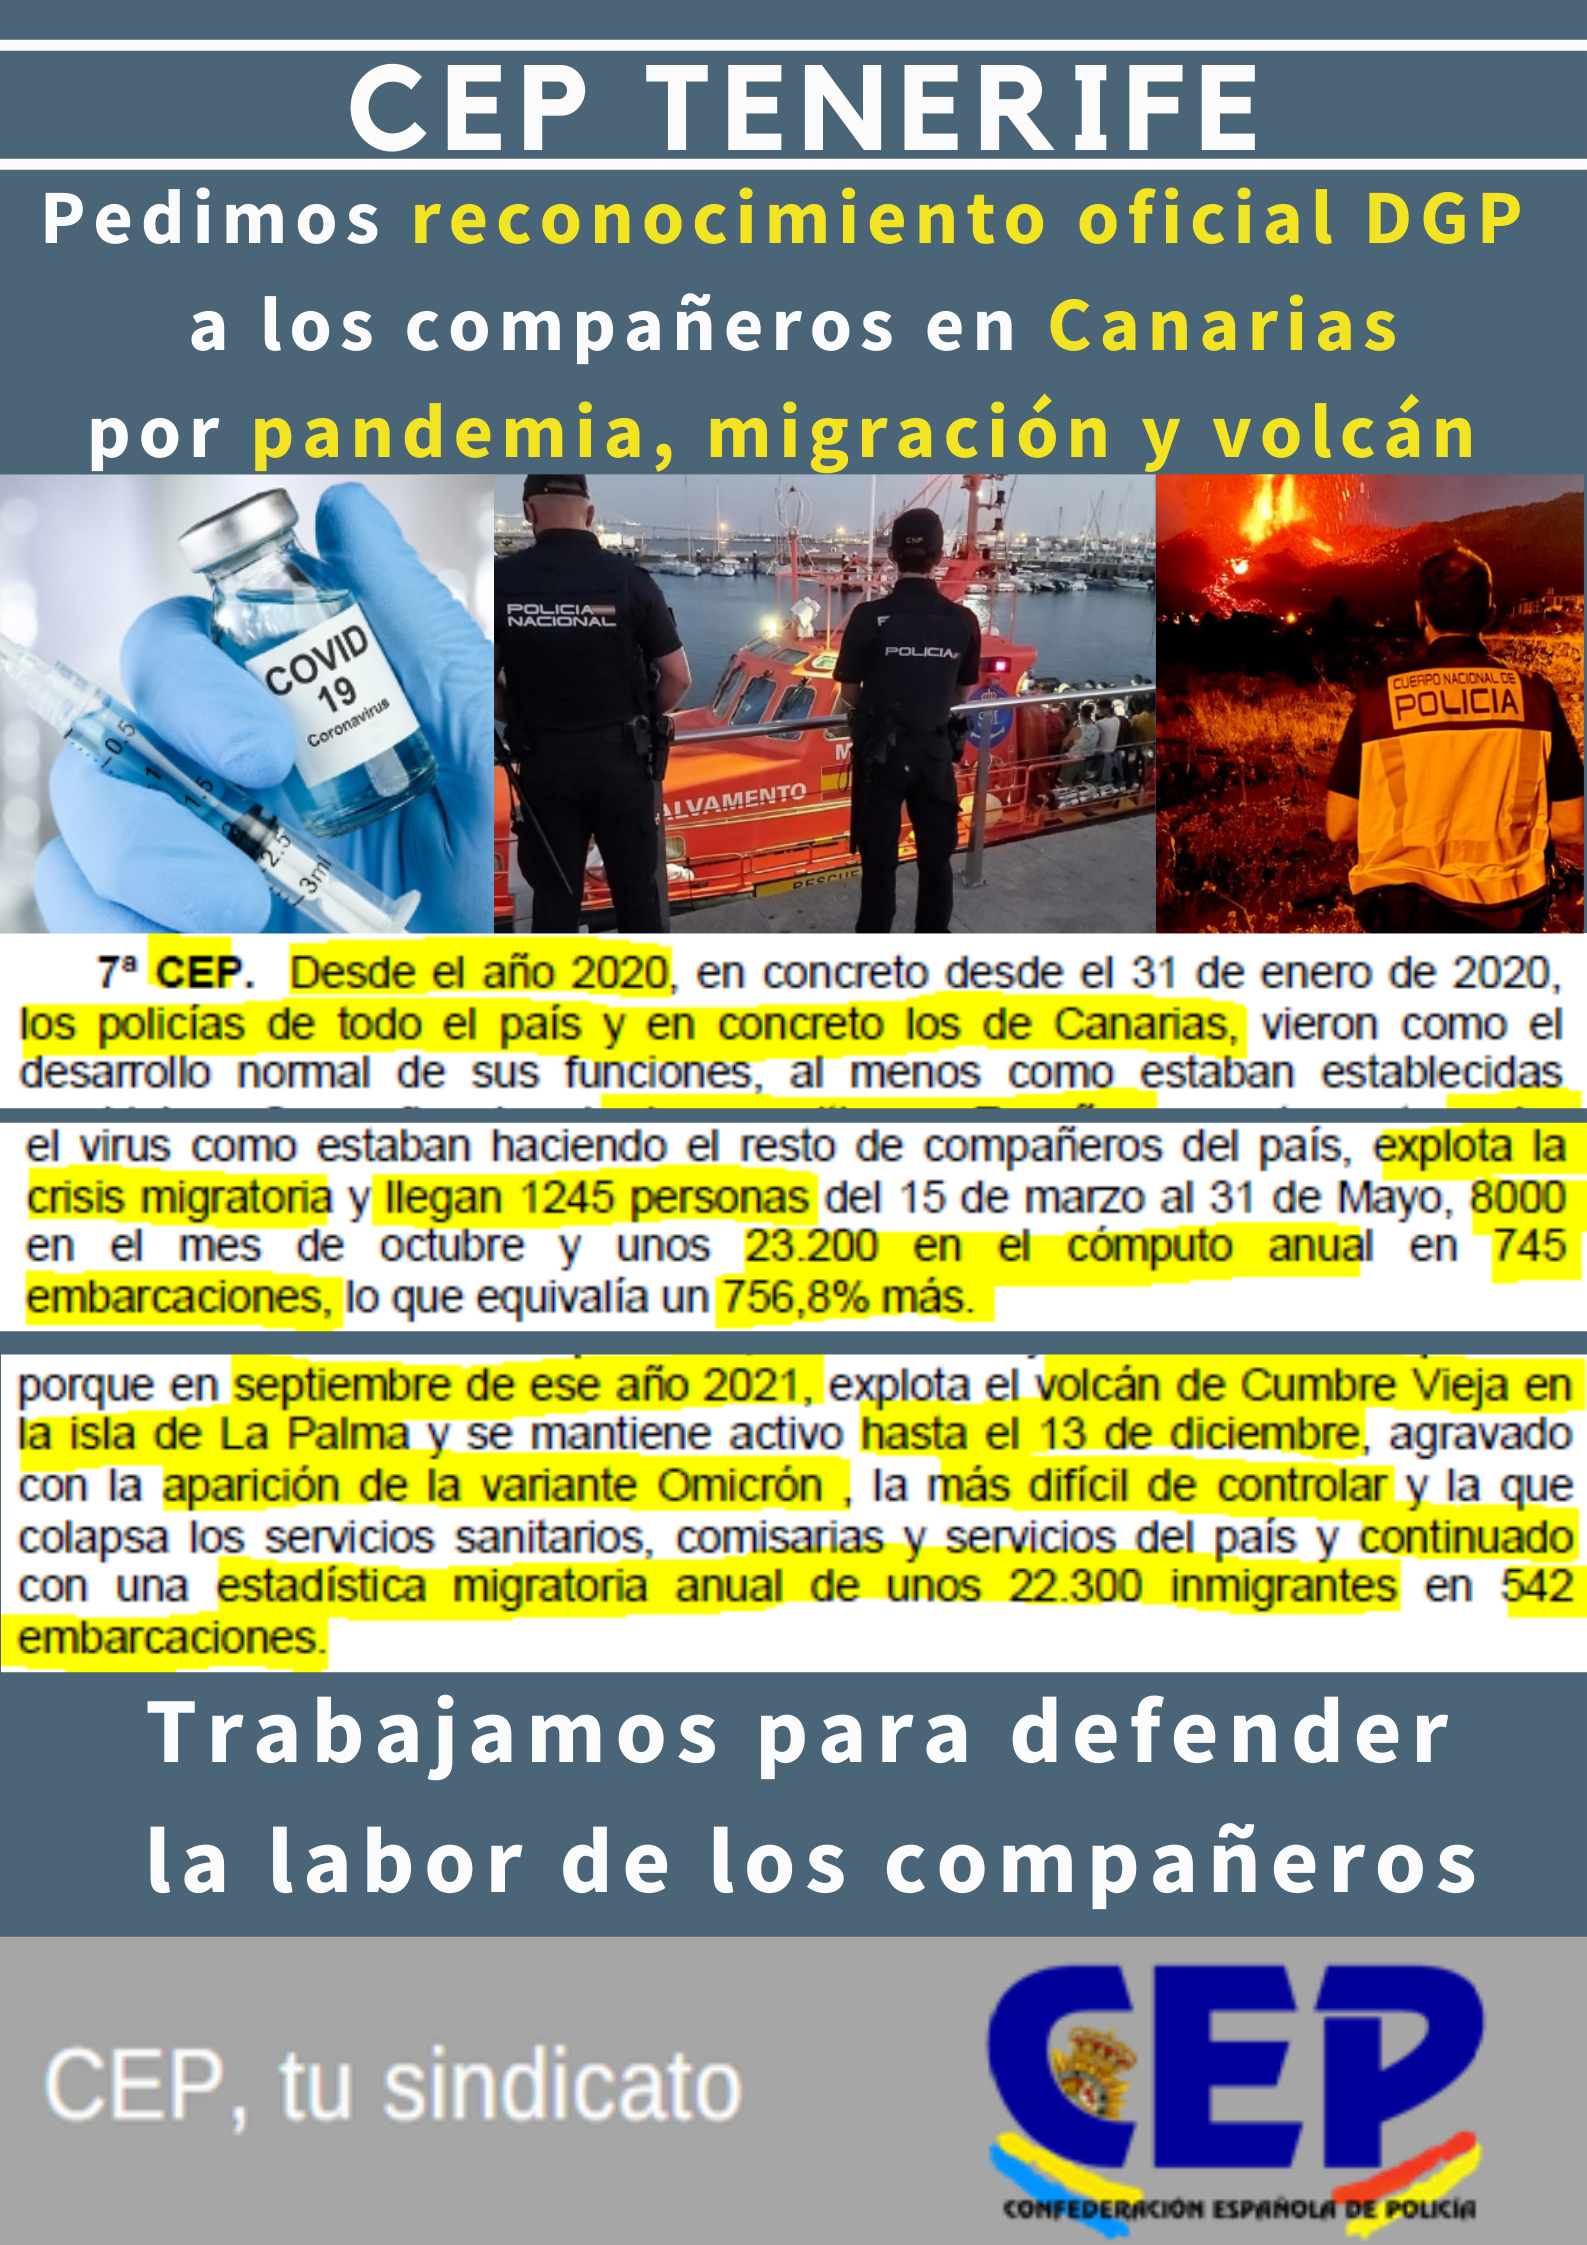 Pedimos reconocimiento oficial DGP compañeros en Canarias por pandemia, migración y volcán